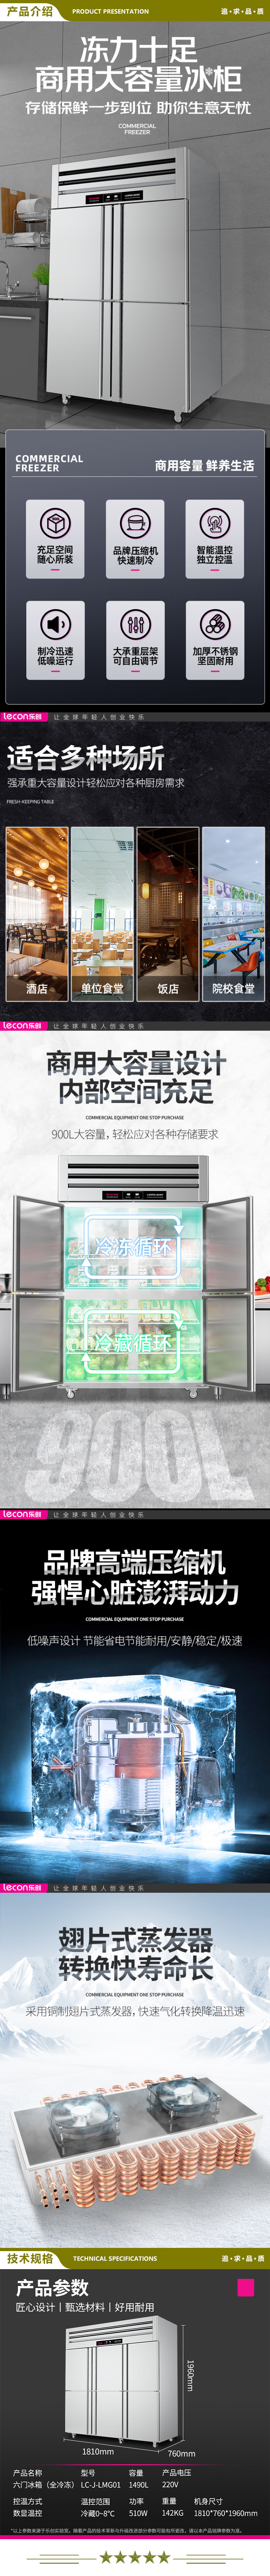 乐创(lecon) LC-J-LMG01 商用六门冰柜 立式厨房保鲜柜节能压缩机 豪华款全冷冻   2.jpg